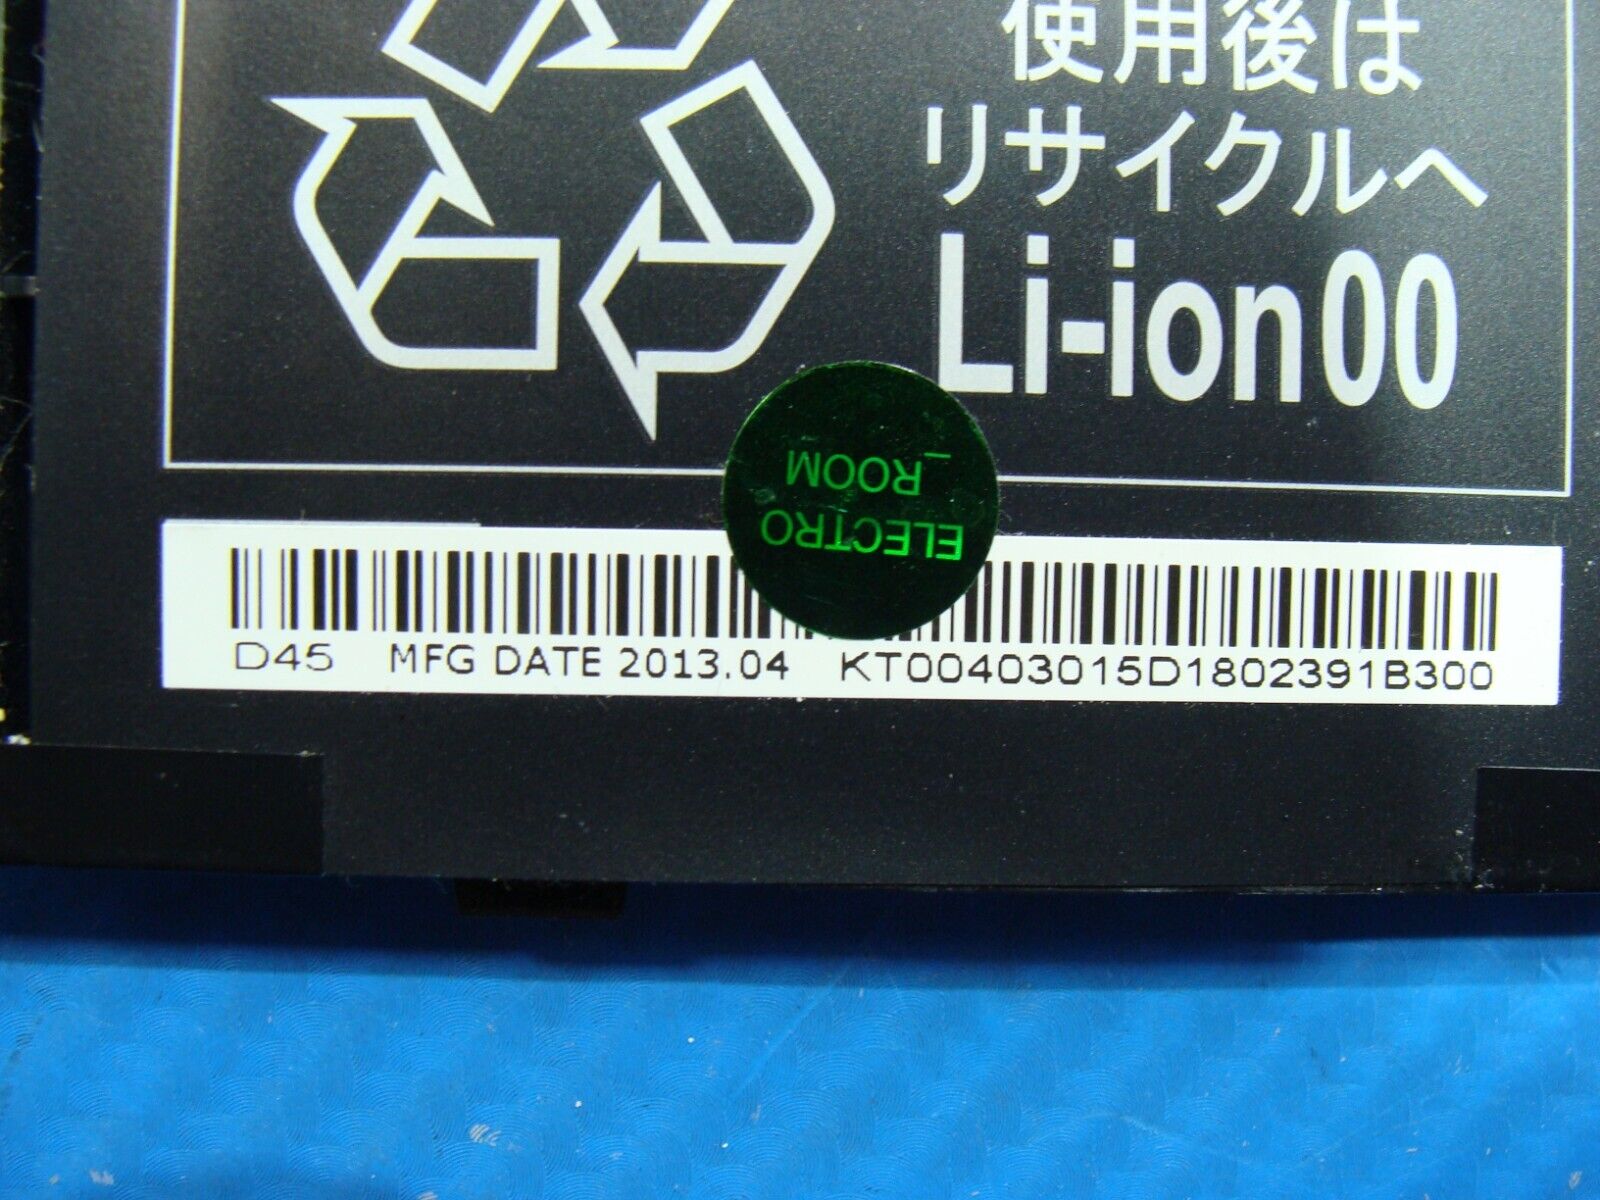 Acer Aspire R7-571 15.6